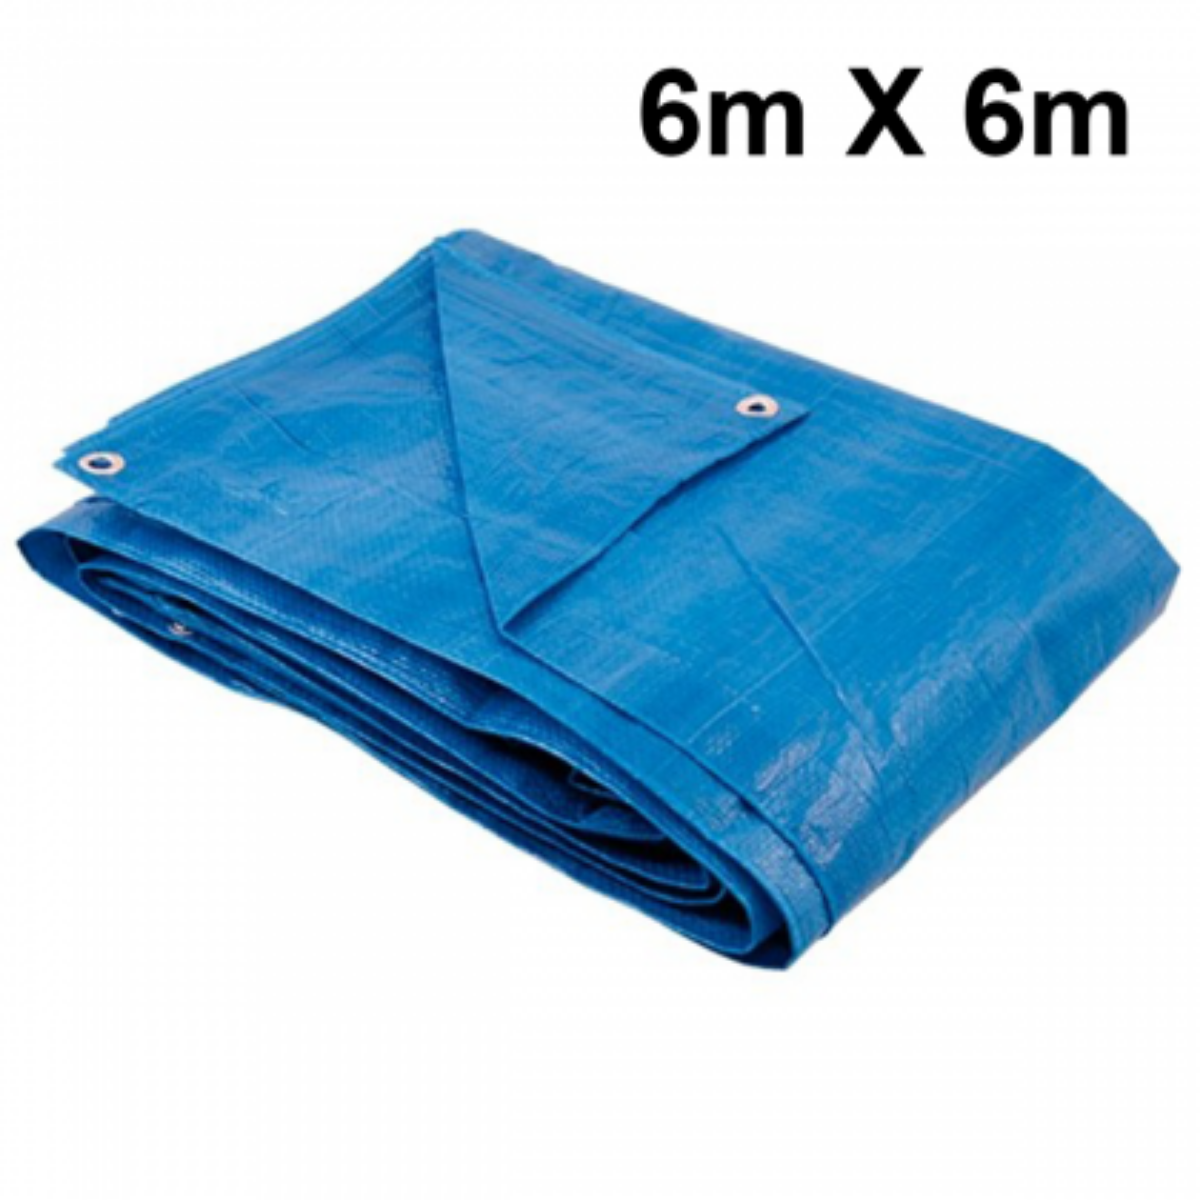 Lona 6x6 Azul Impermeável Carreteiro Piscina 200 Micras Grossa Reforçada